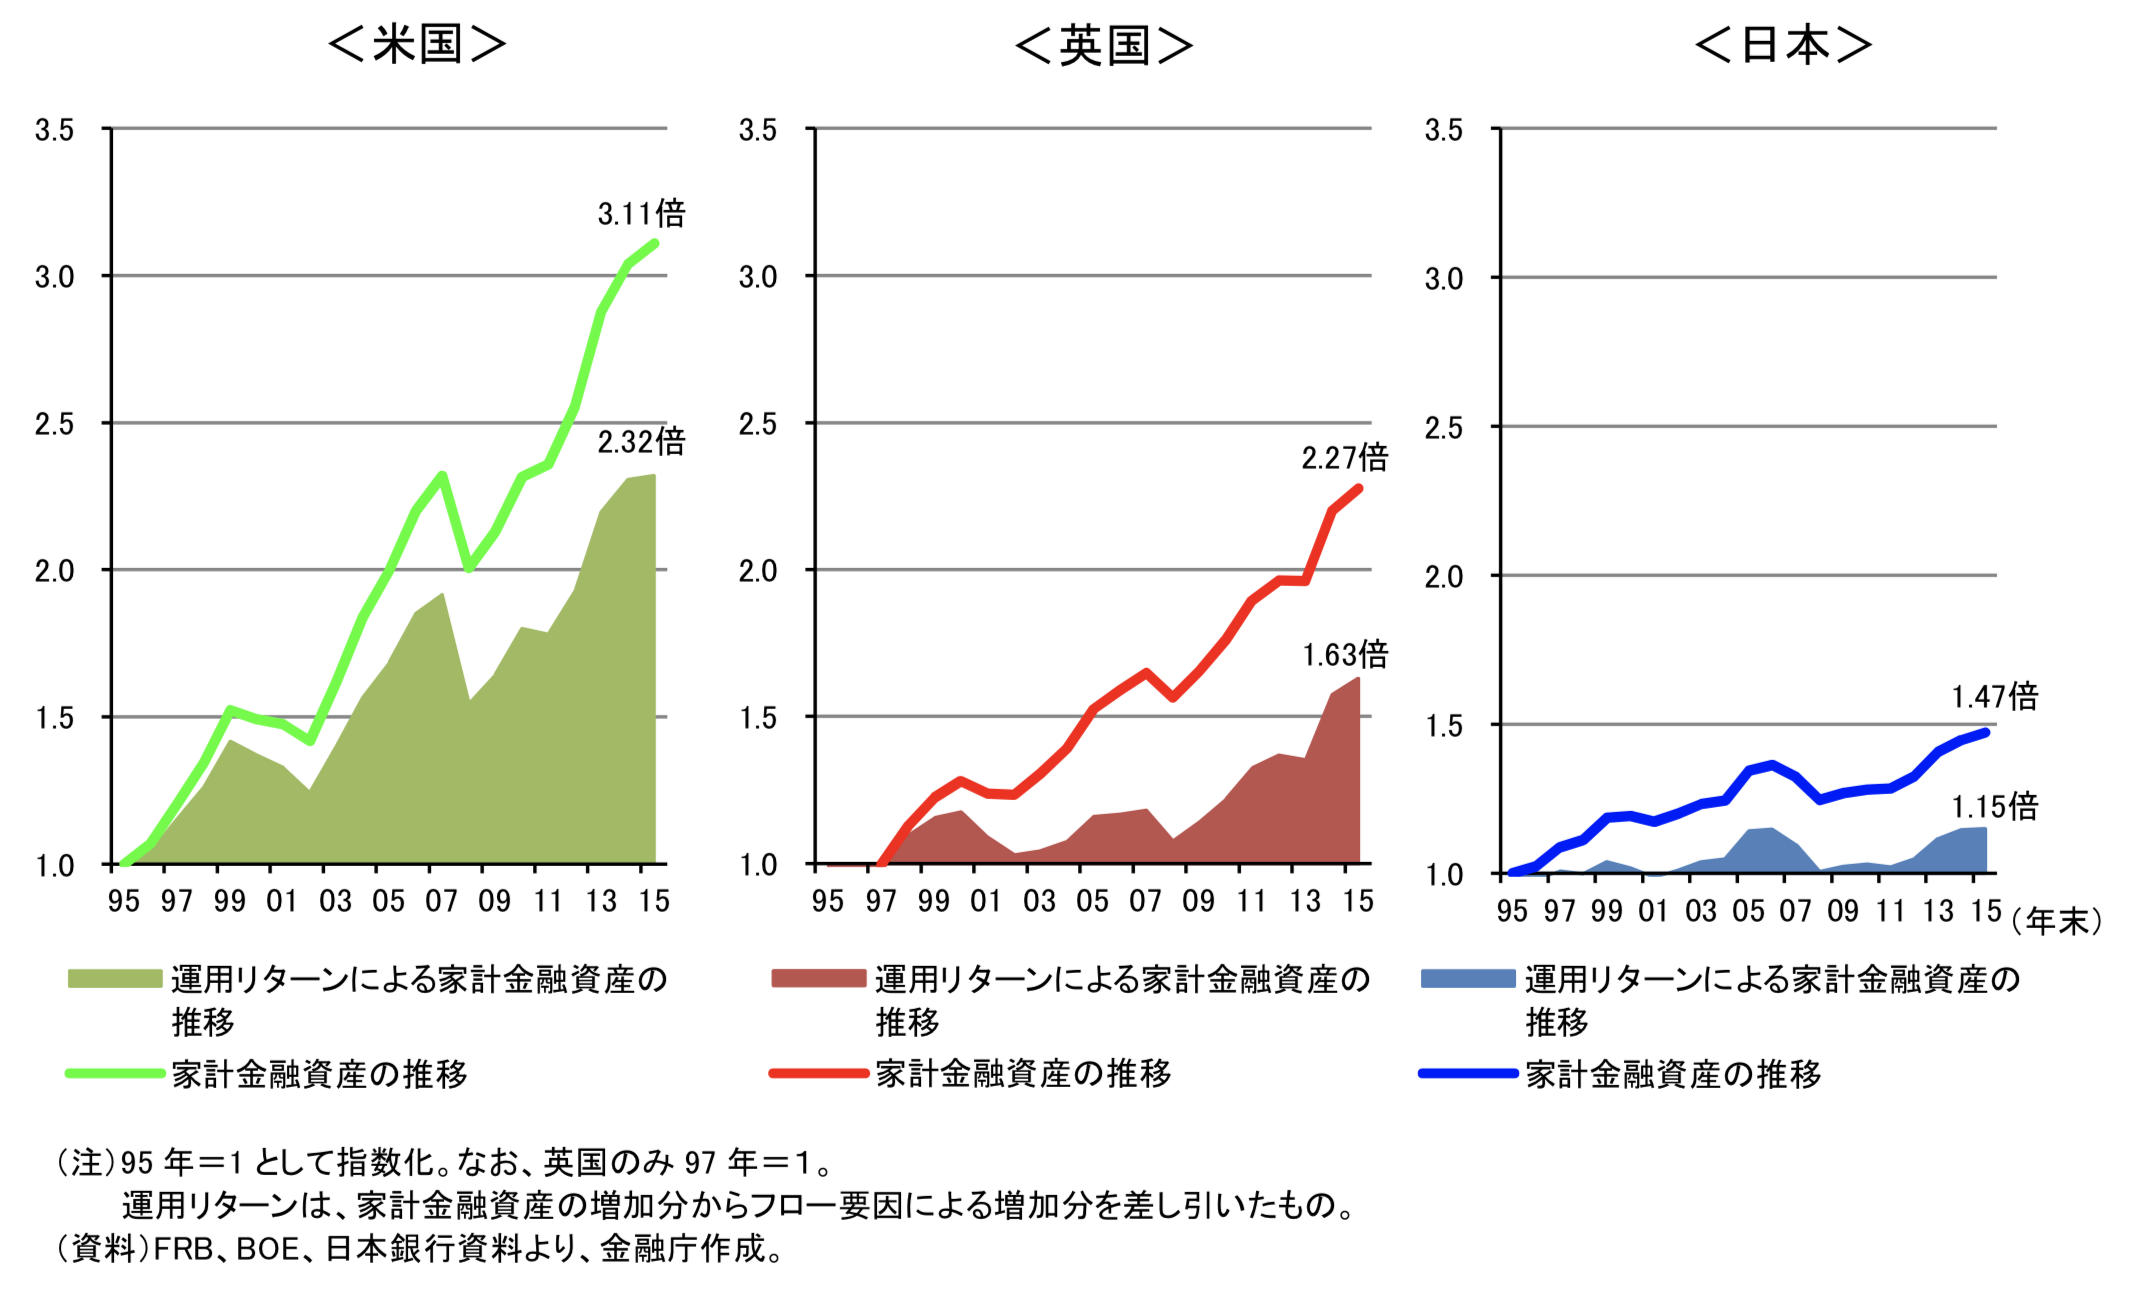 日米英の家計資産増加の要因